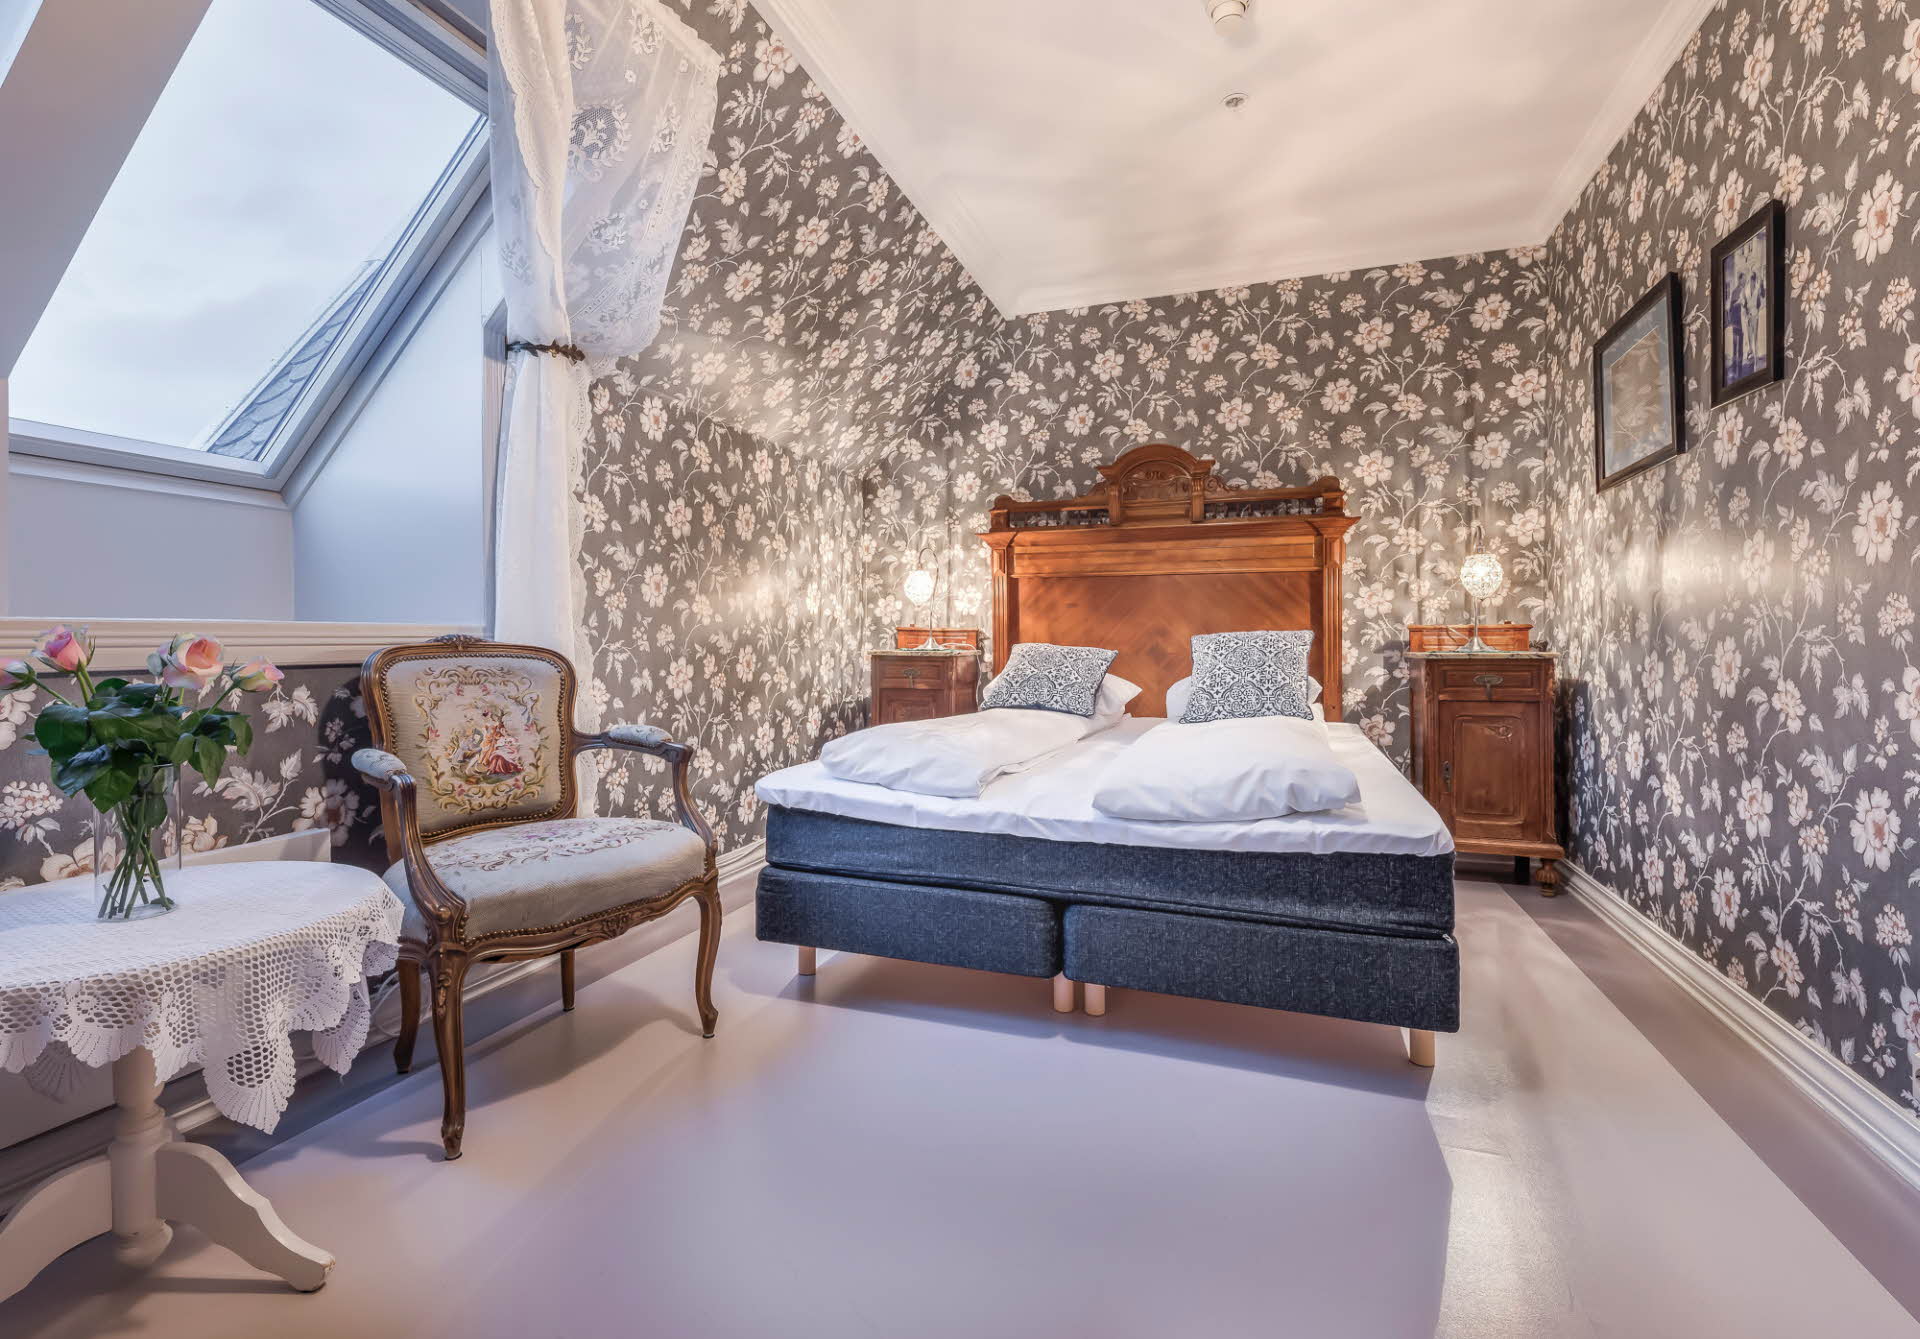 アンティークの家具や壁紙が特徴のグロッペン ホテルの歴史ある客室。 